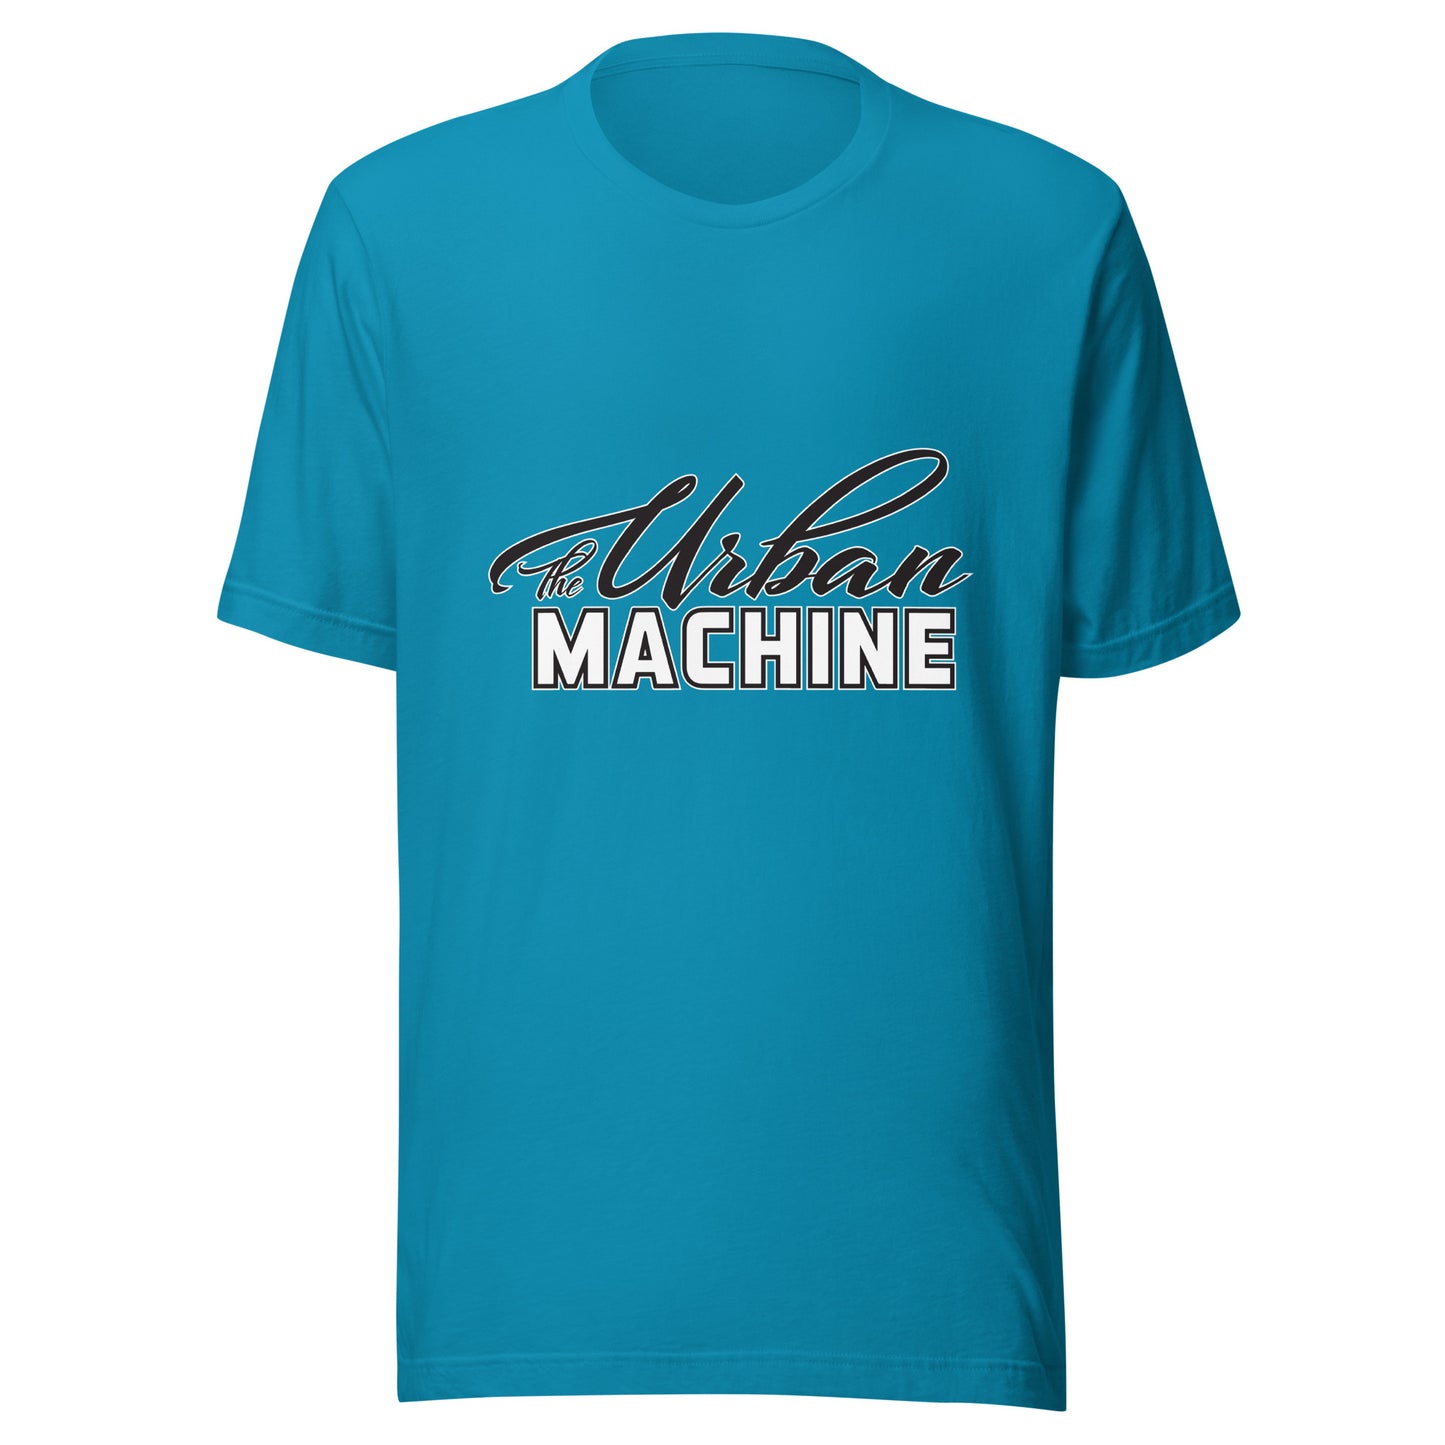 The Urban Machine Crew Neck T-Shirt